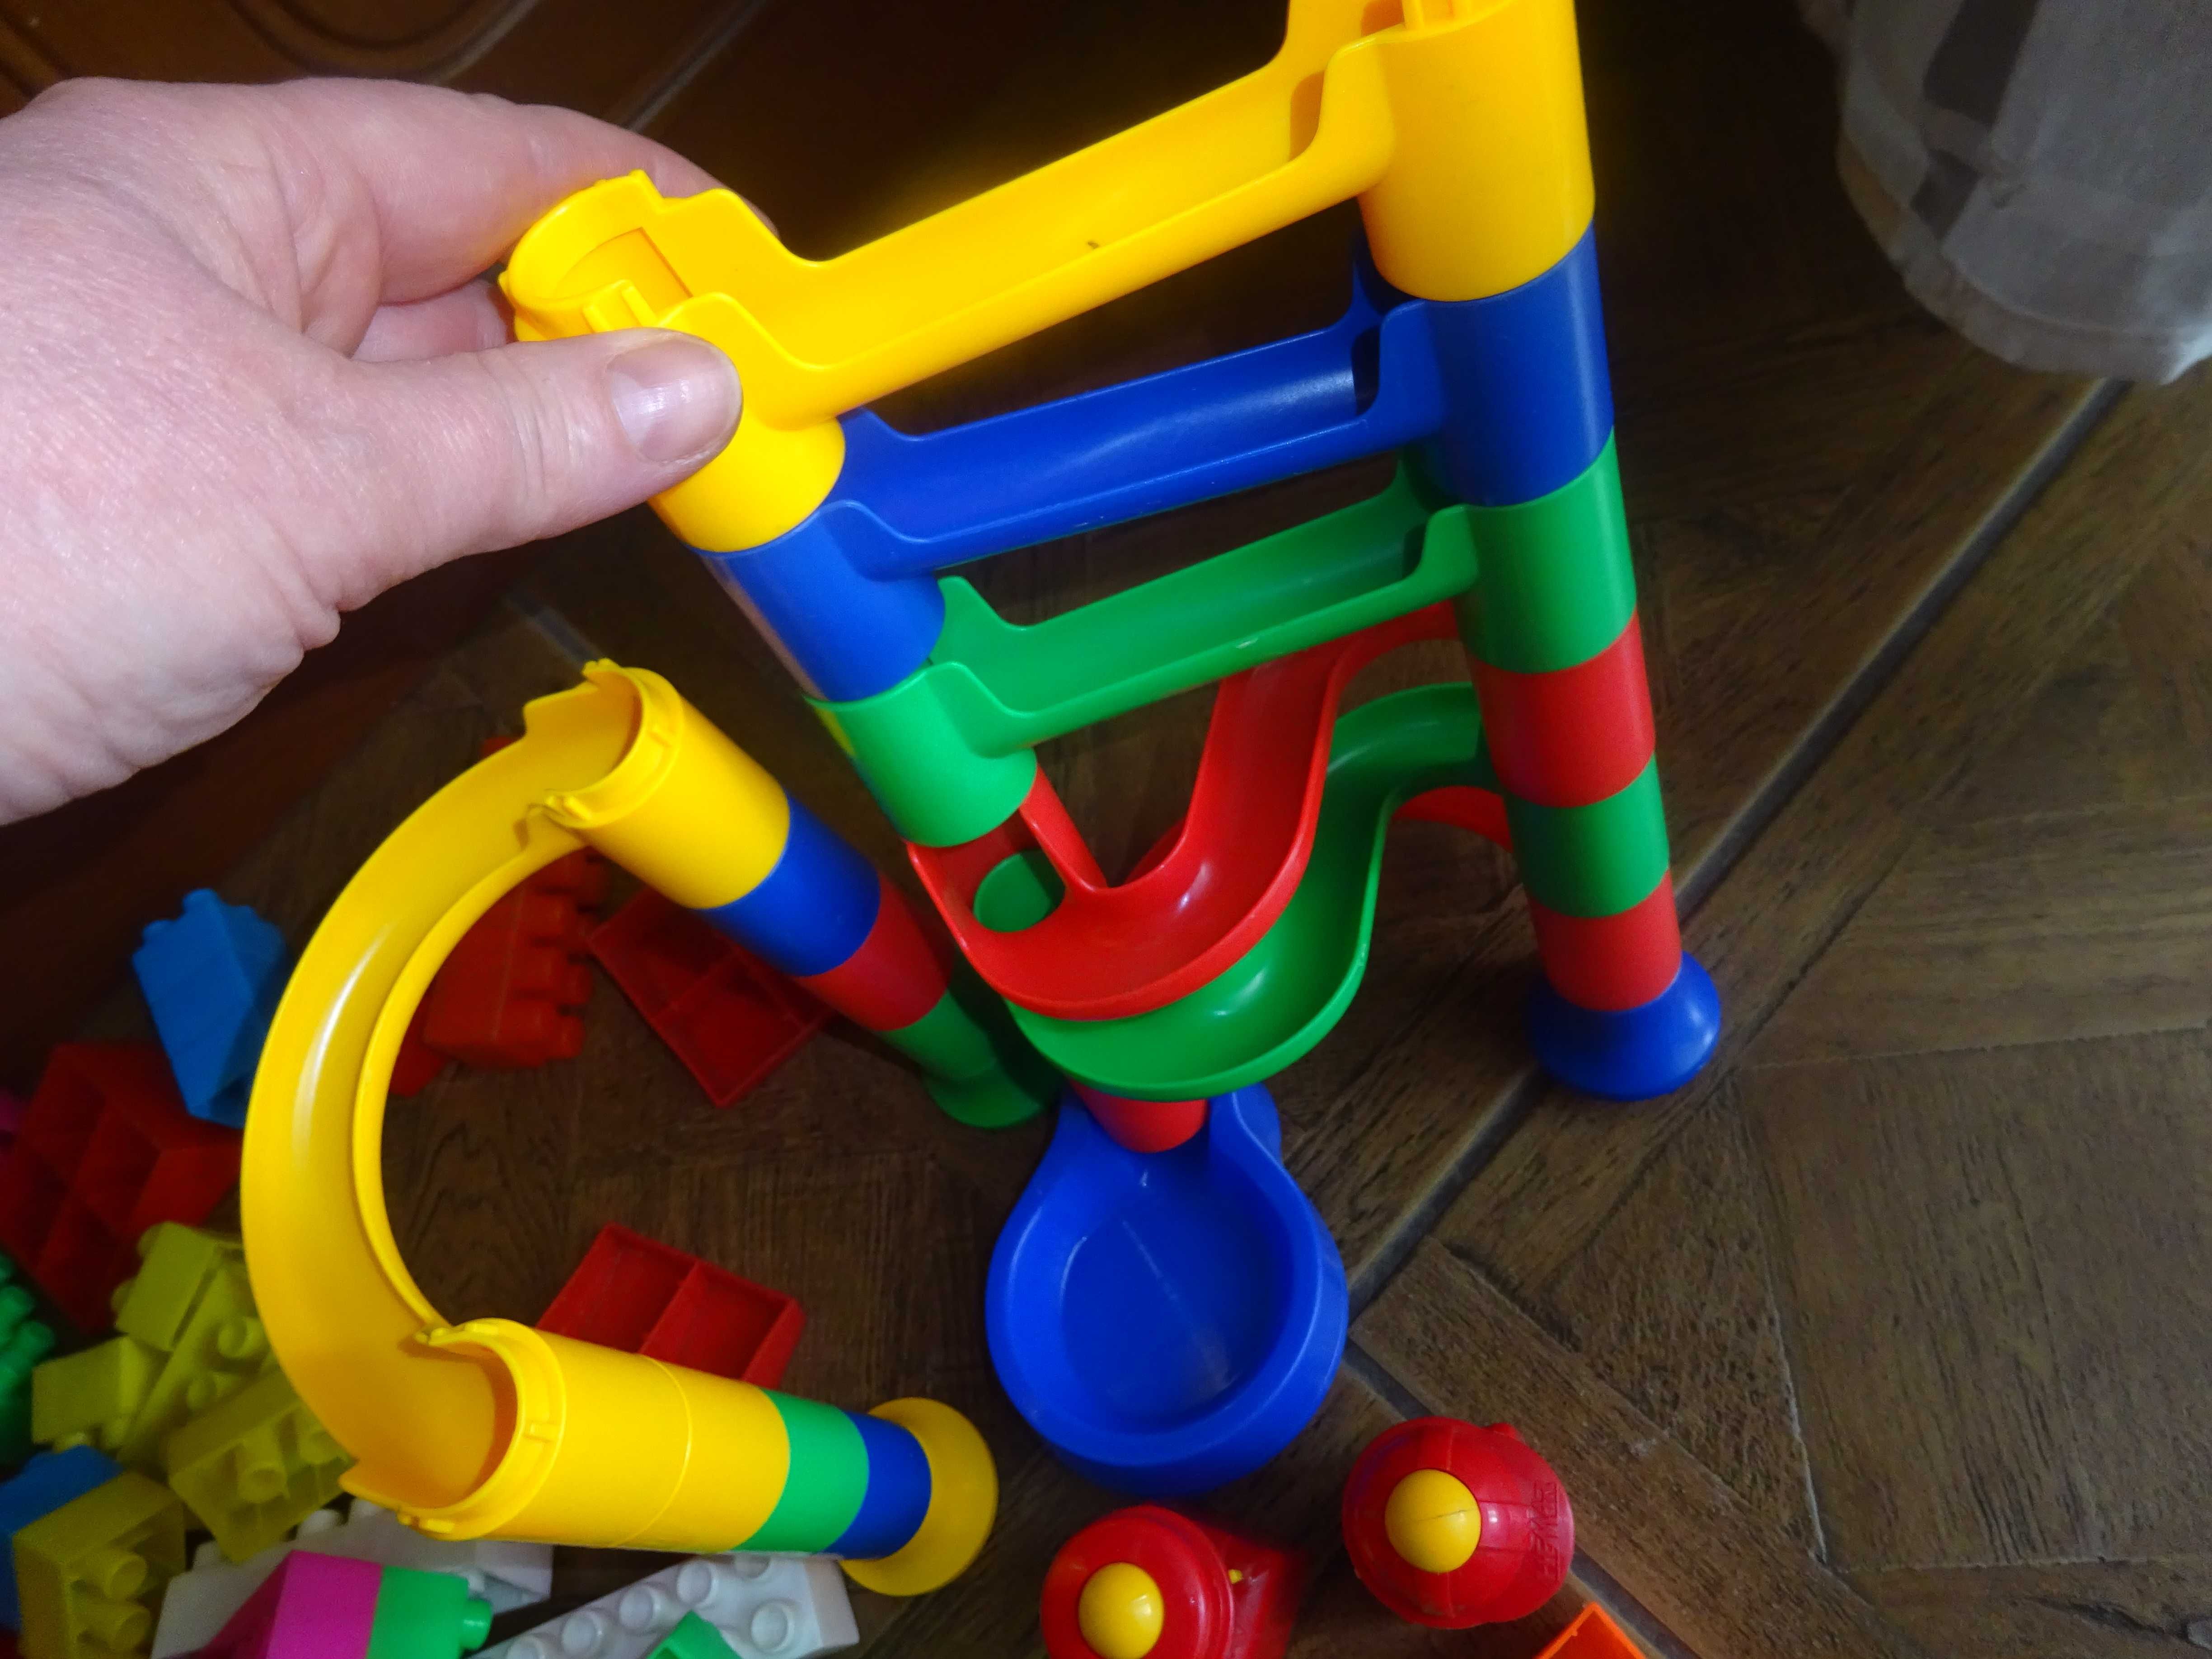 klocki zabawki plastikowe duża ilość używane konstrukcyjne